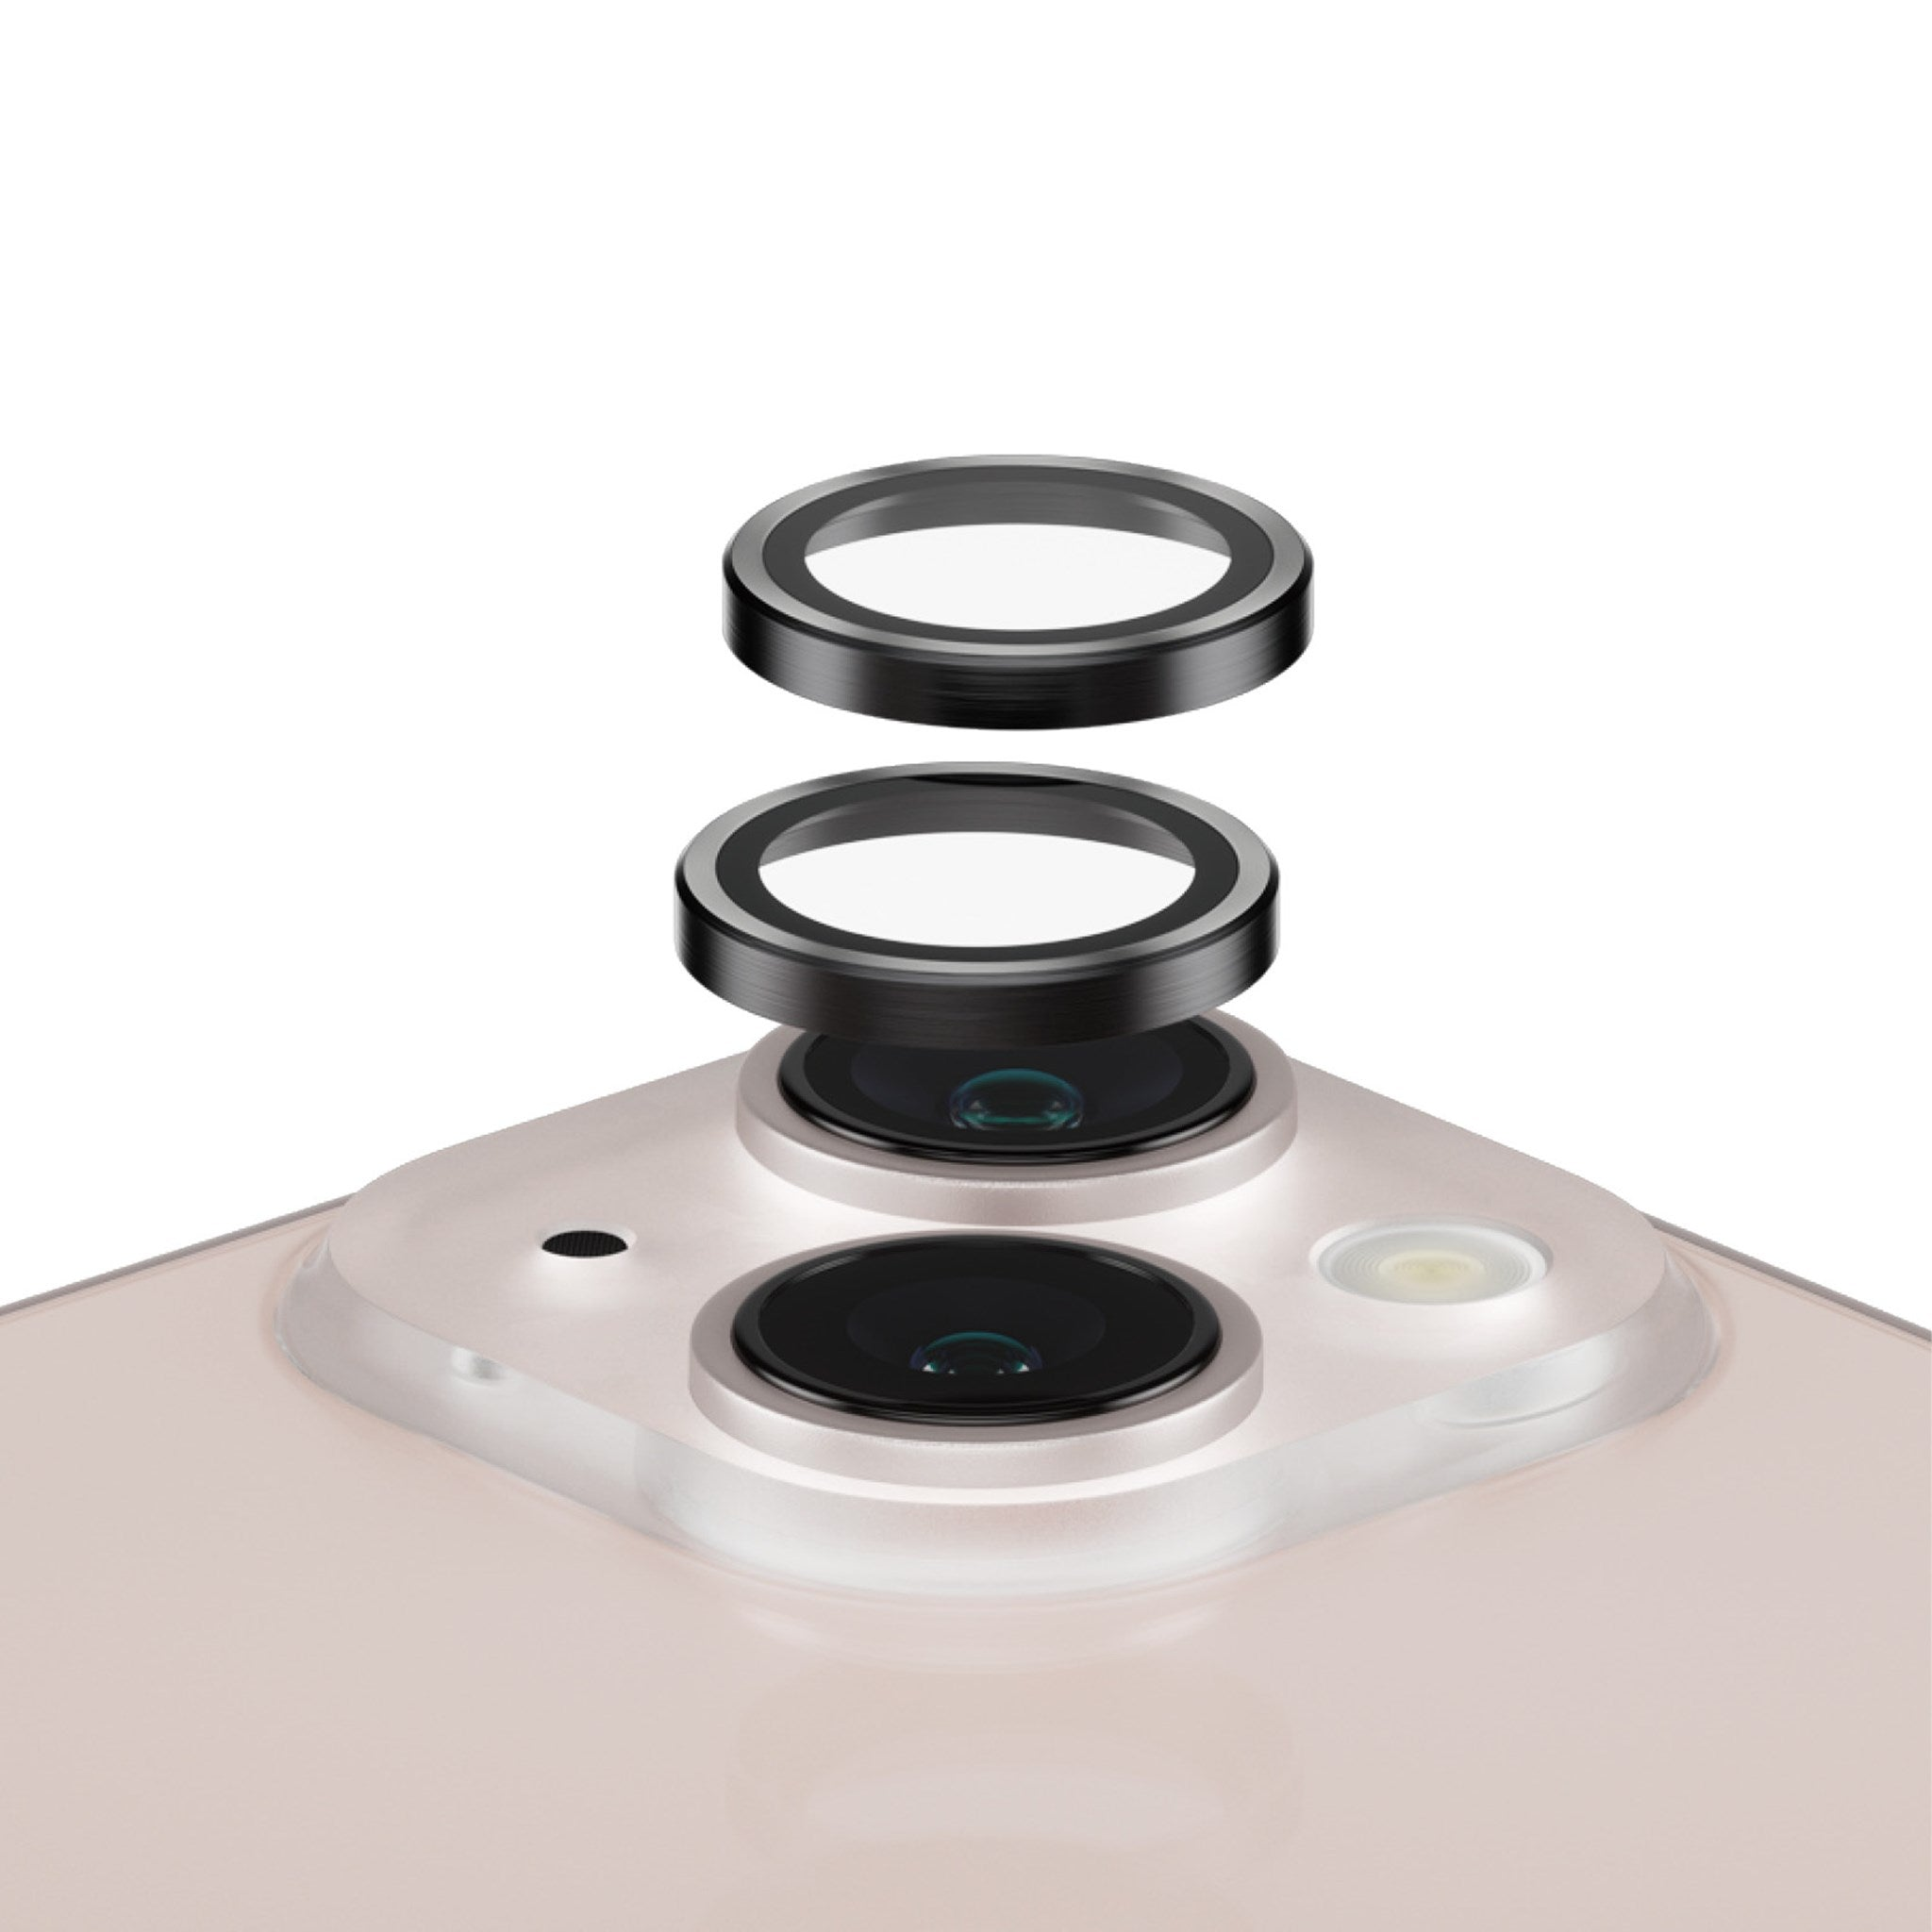 mini Kameraschutz | 13) iPhone Hoops™ PANZERGLASS Kameraschutz(für 13 Apple